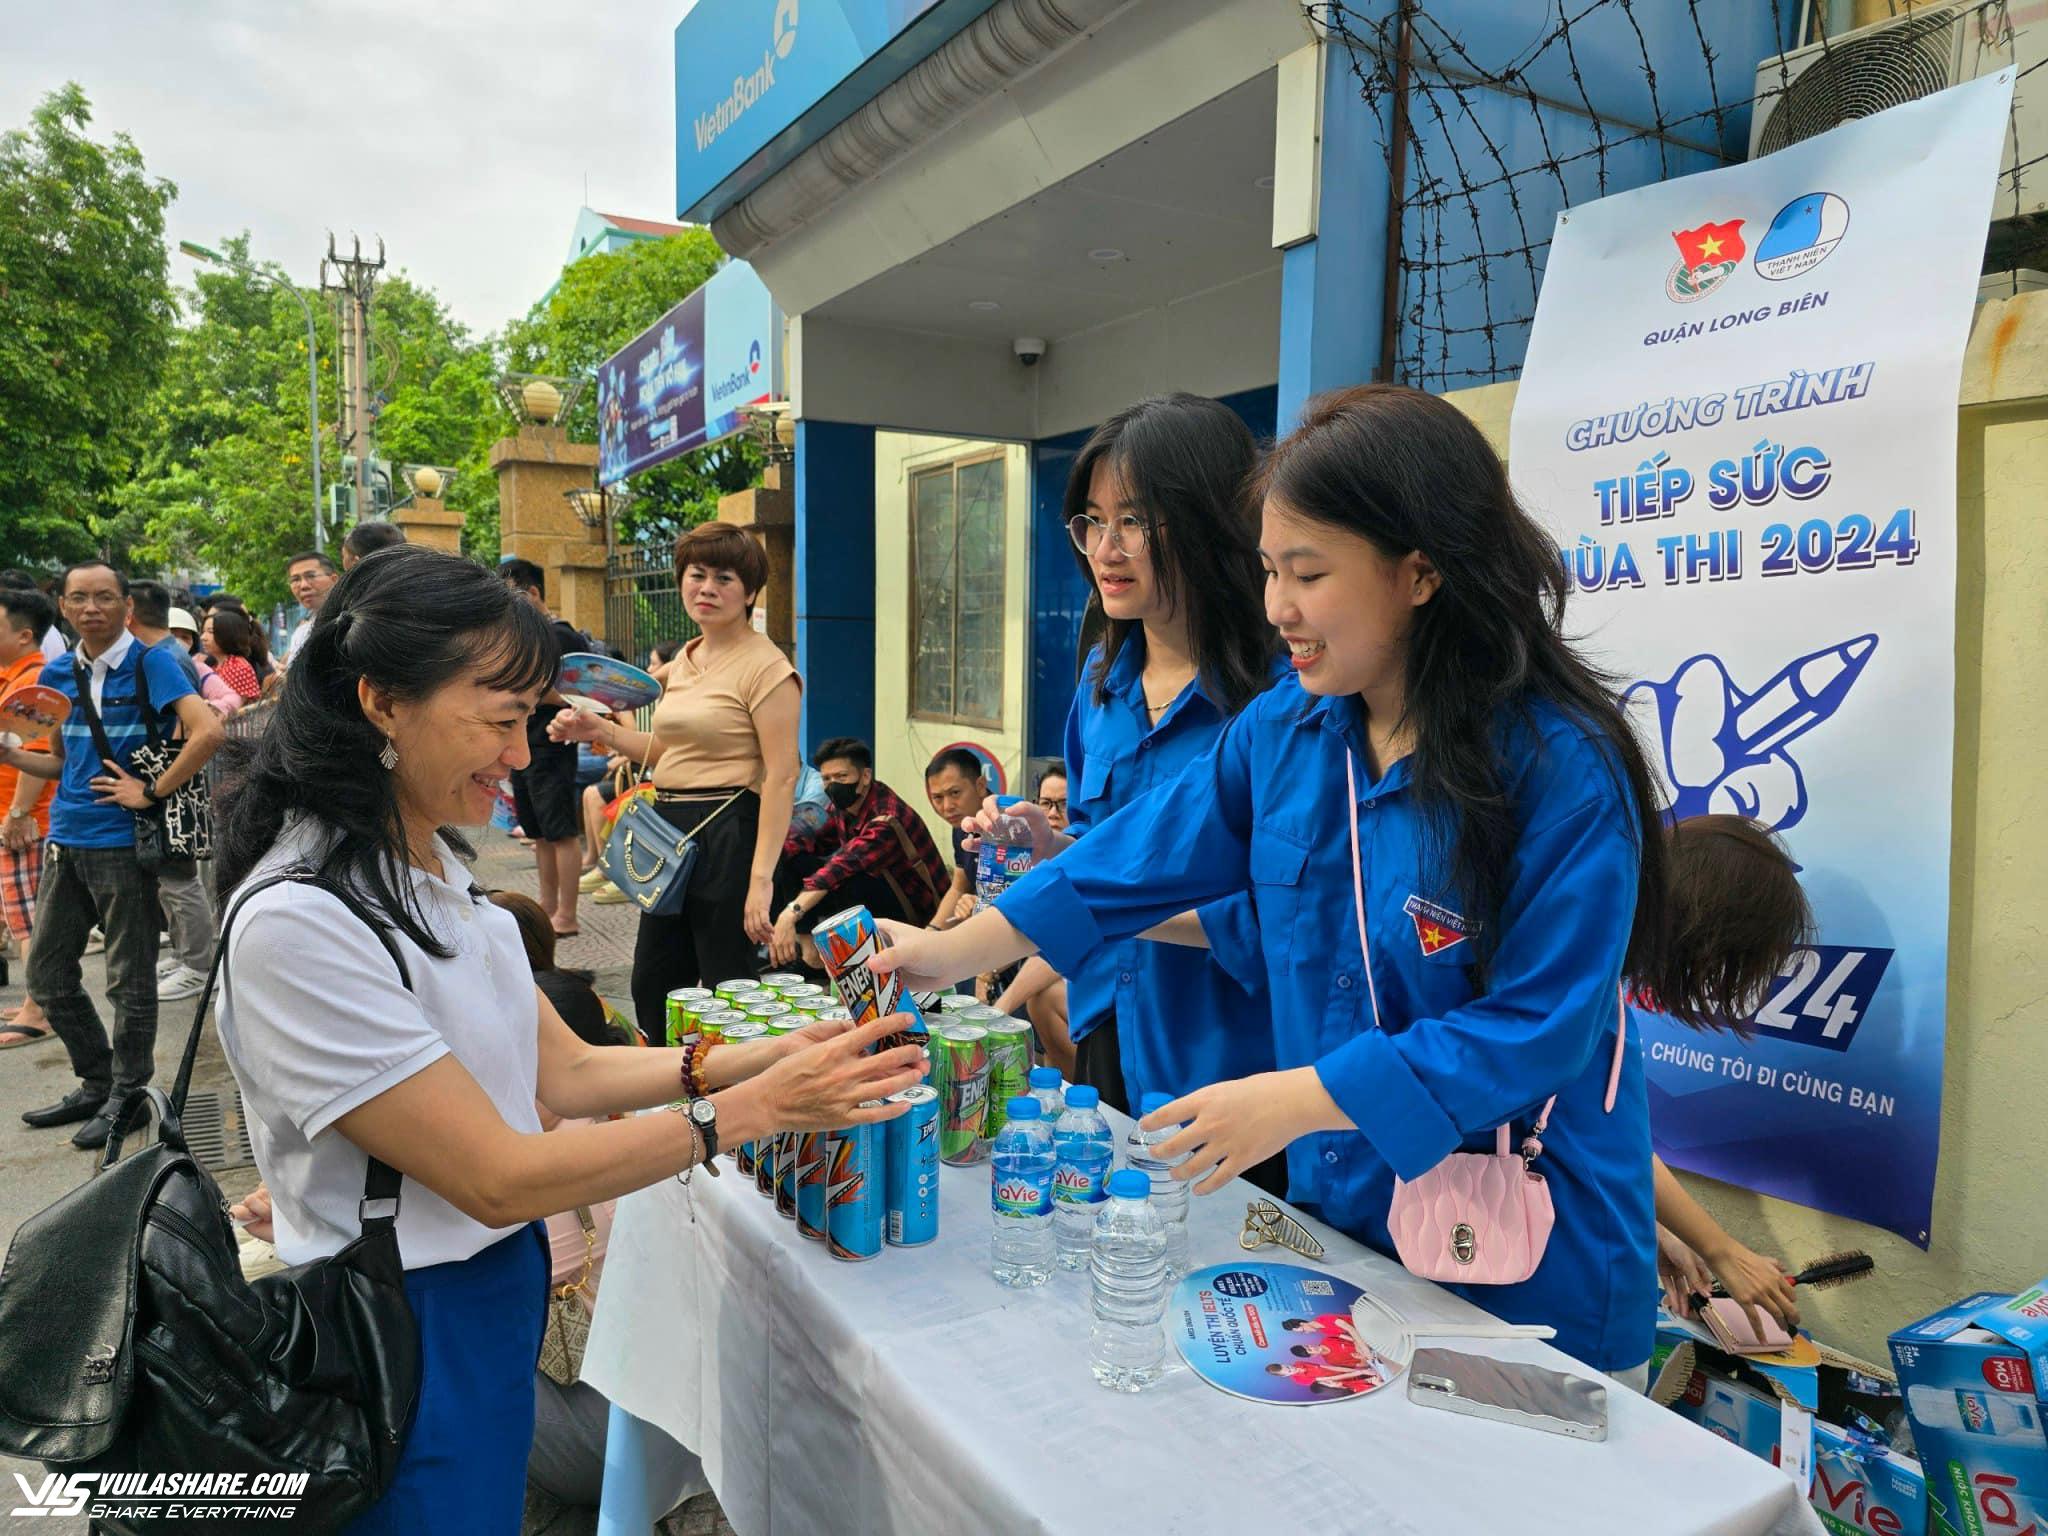 T.Ư Hội Sinh viên Việt Nam tặng quà tình nguyện viên Tiếp sức mùa thi- Ảnh 2.